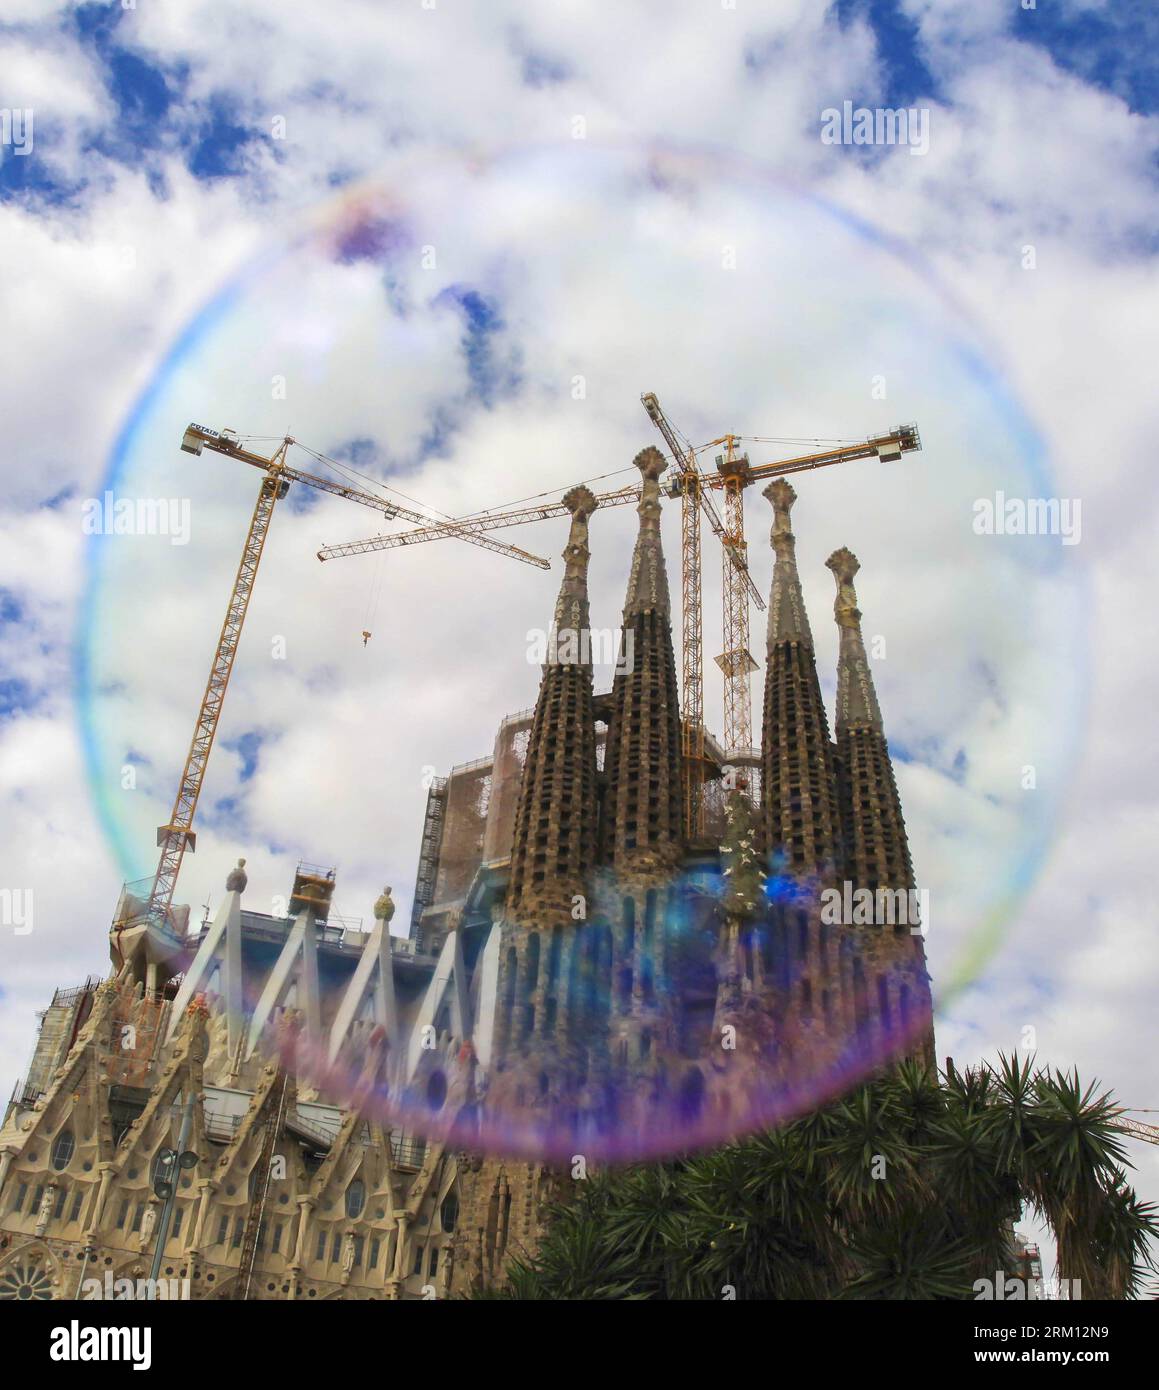 Bildnummer: 59501178 Datum: 10.04.2013 Copyright: imago/Xinhua (130411) -- BARCELLONA, 10 aprile 2013 (Xinhua) -- la basilica e la chiesa espiatoria della Sacra famiglia sono viste attraverso una bolla di sapone fatta da un busker a Barcellona, Spagna, il 10 aprile 2013. La chiesa cattolica, comunemente nota come Sagrada Familia, fu progettata da Antoni Gaudí (1852-1926) e la sua costruzione era iniziata nel 1882. Sebbene sia incompleta dopo oltre 130 anni, la chiesa è un sito patrimonio dell'umanità dell'UNESCO. (Xinhua/Sun Wen) (rh) SPAGNA-BARCELLONA-LA SAGRADA FAMILIA PUBLICATIONxNOTxINxCHN Gesellschaft Seifenbla Foto Stock